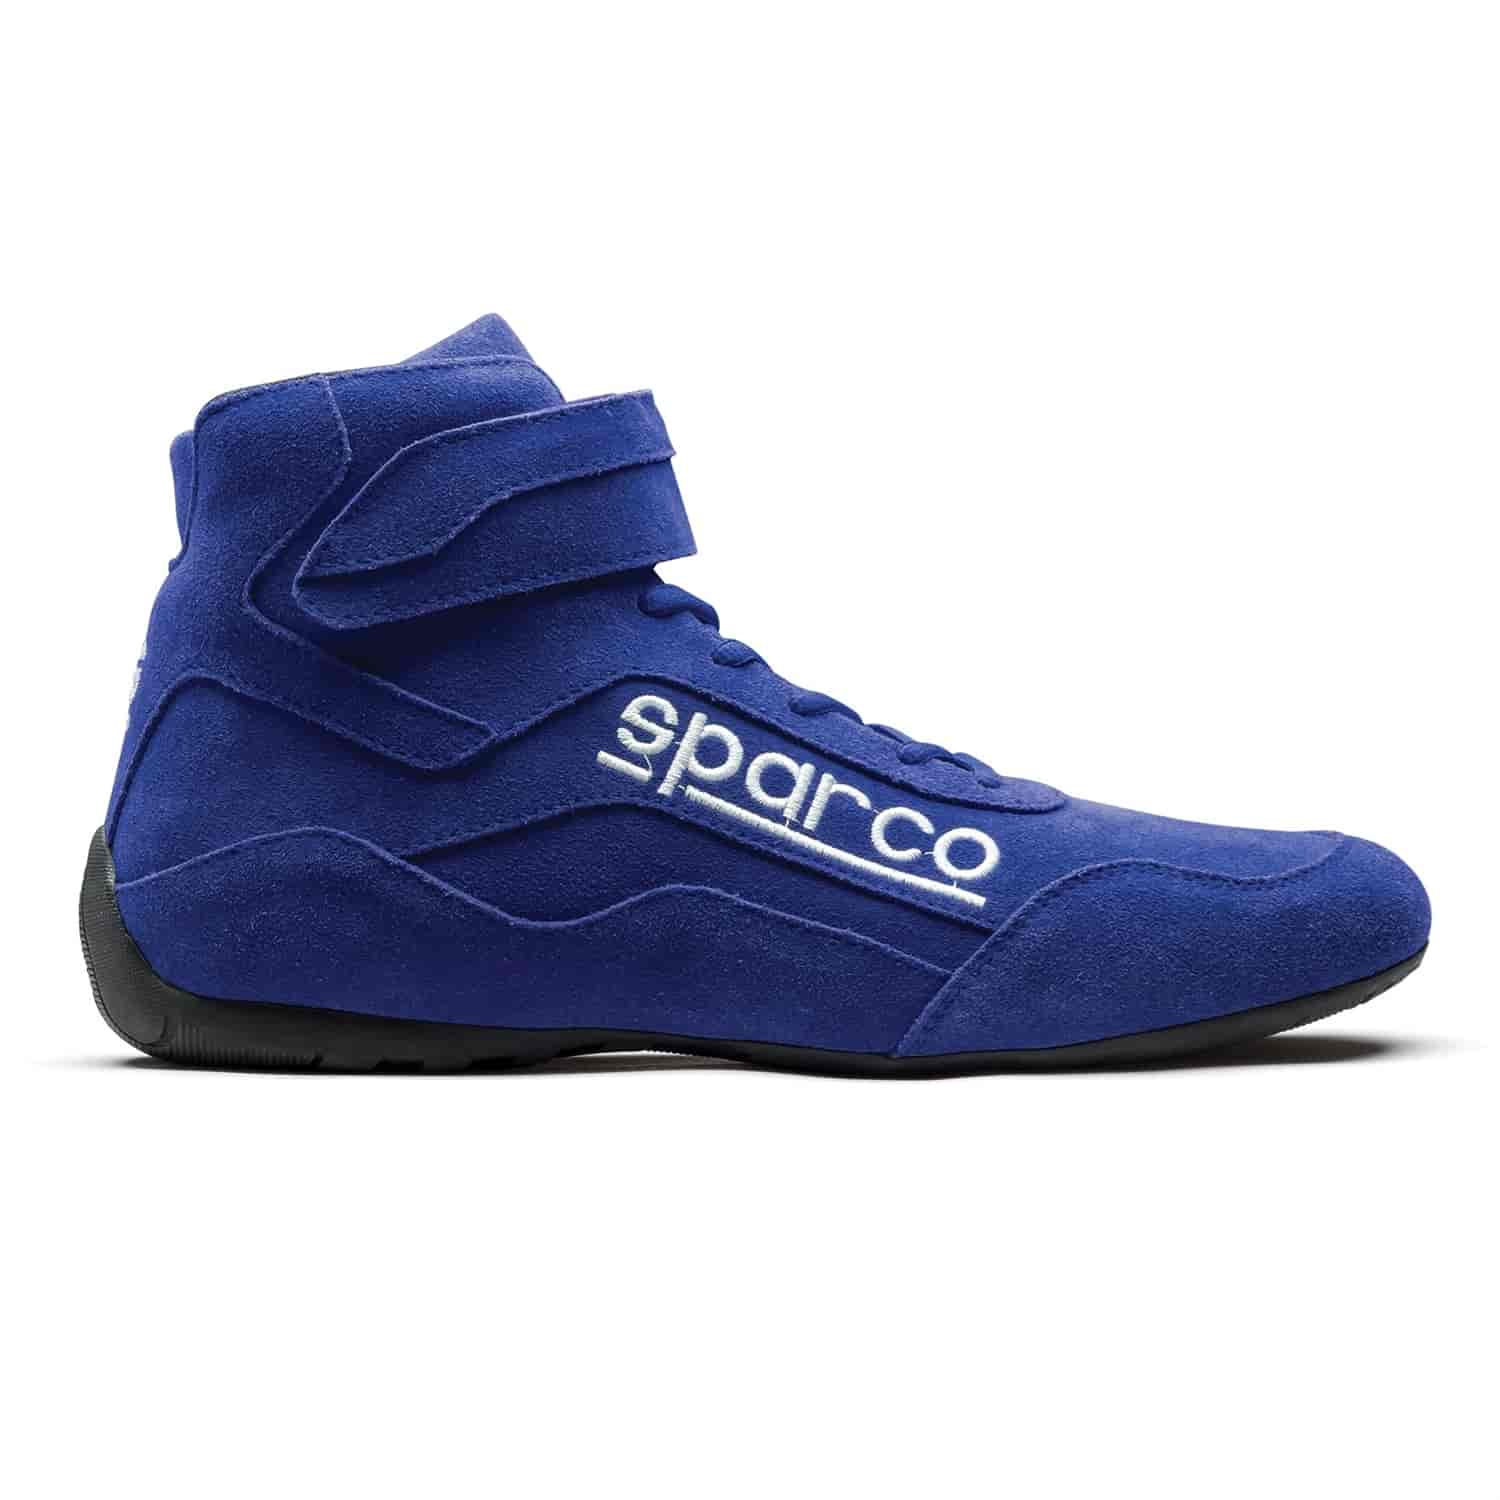 Race 2 Shoe Size 10 - Blue